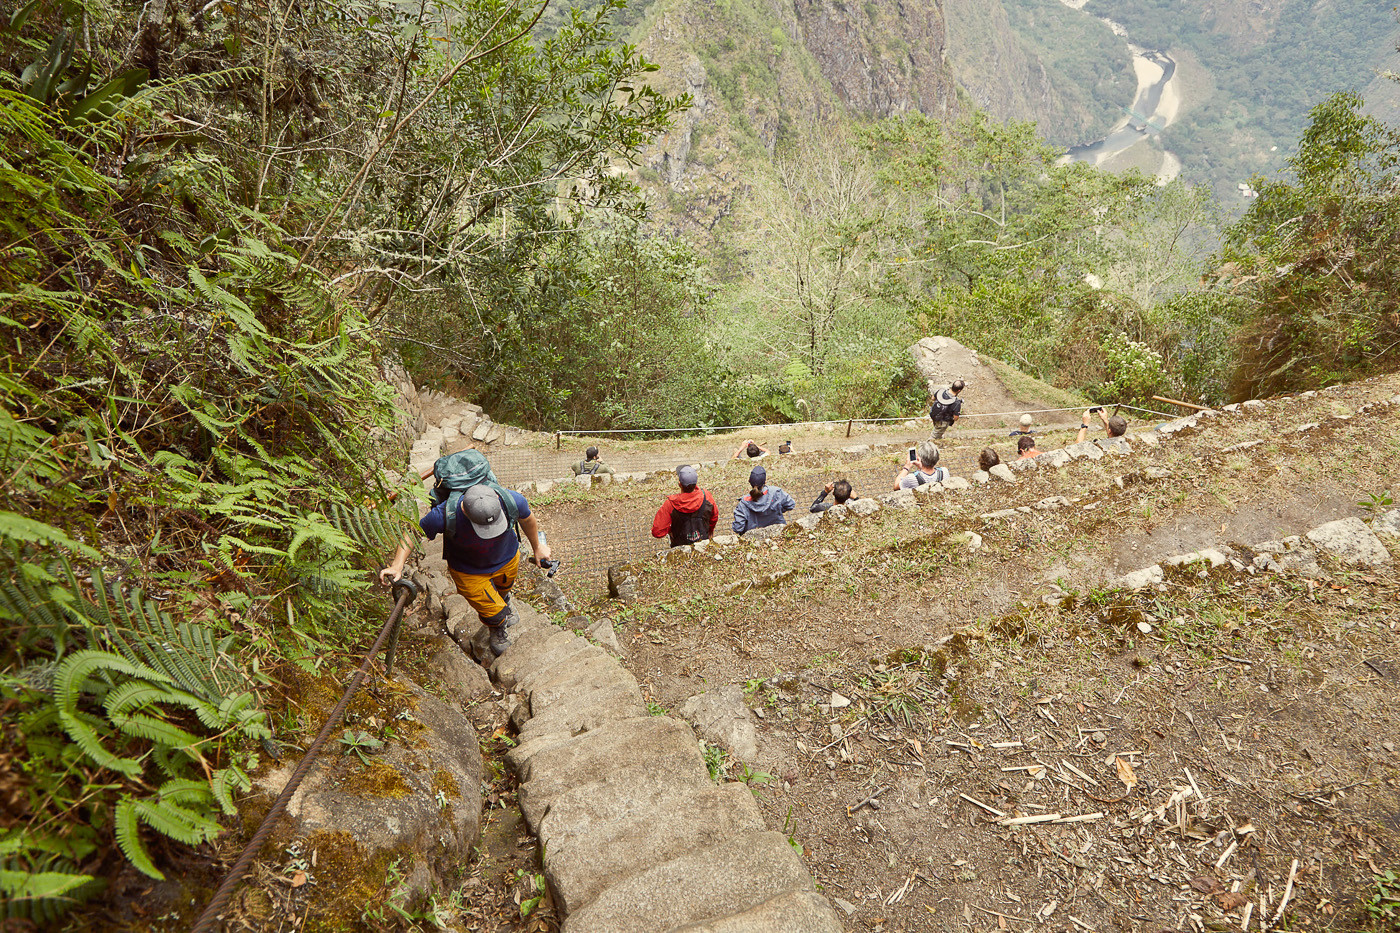 Die letzten Stufen stammen wohl noch aus der Inka Zeit, sie sind sehr schmal und steil